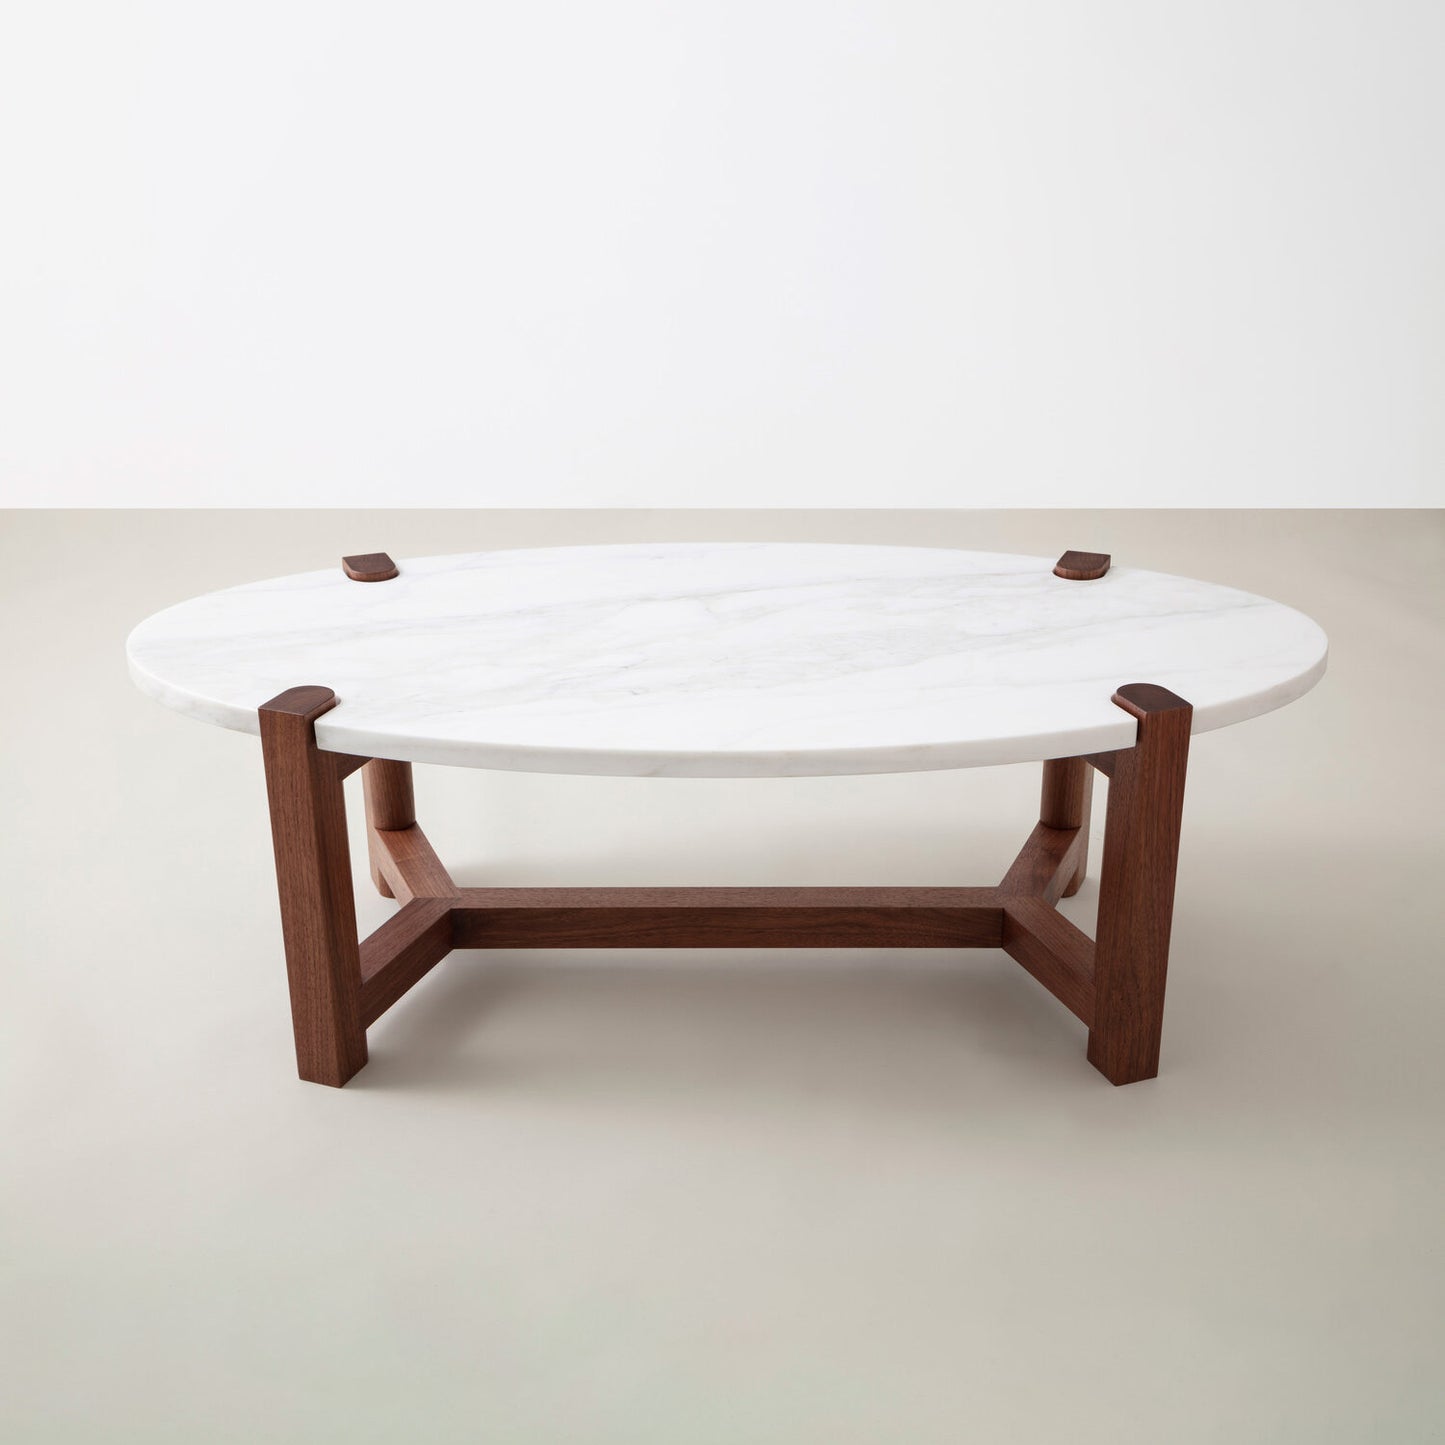 Coffee table 60 x 110 cm - HOS35